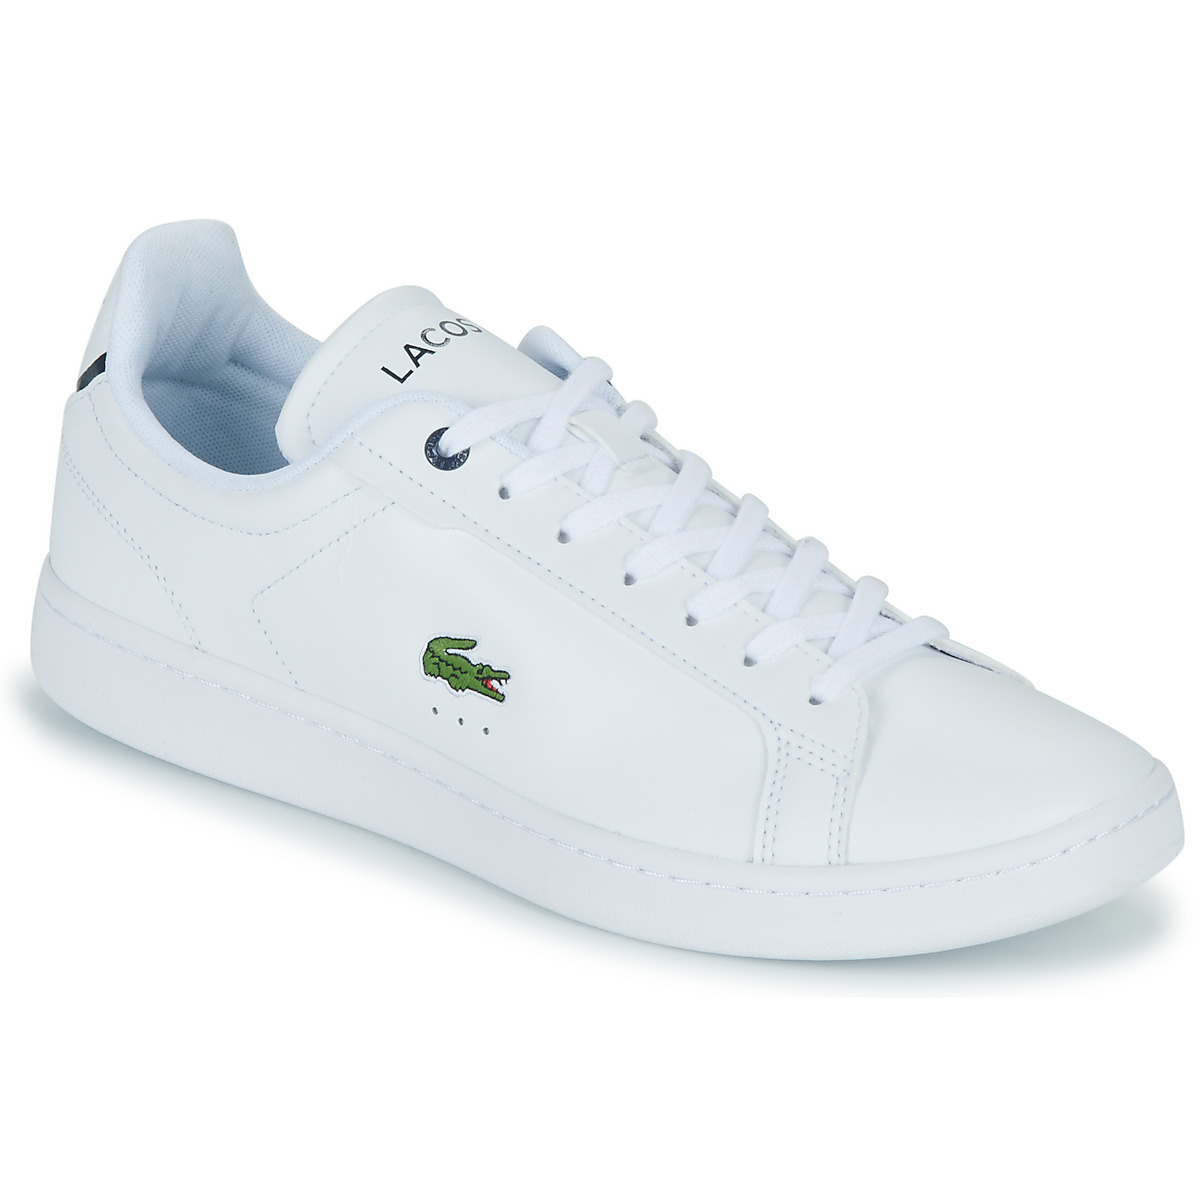 Sko Herre Lave sneakers Lacoste CARNABY PRO Hvid / Blå